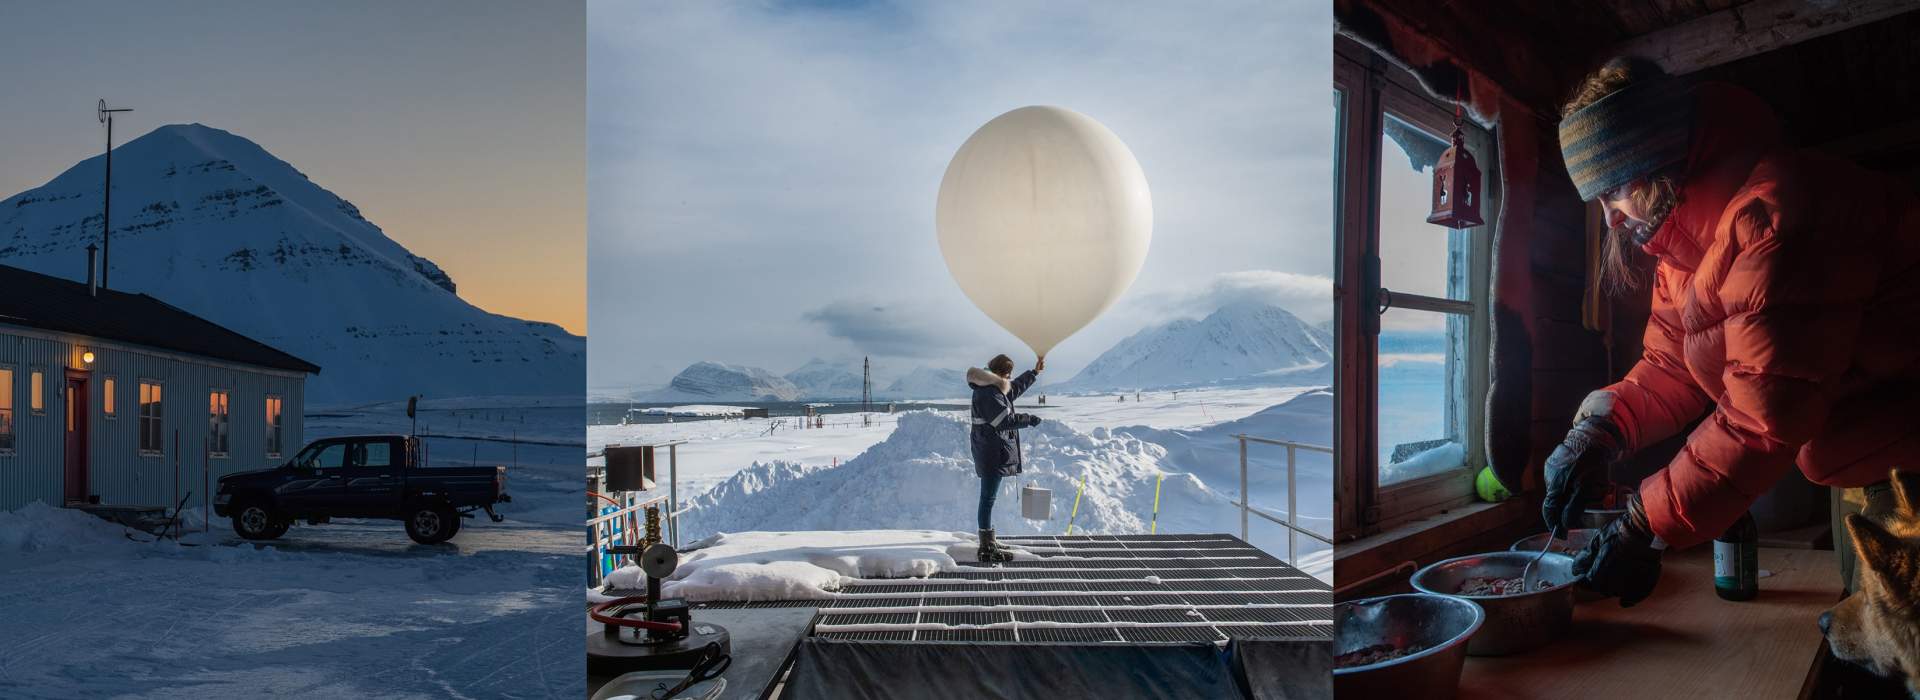 Geschichten zu den gefrorenen Landschaften der Polarregionen